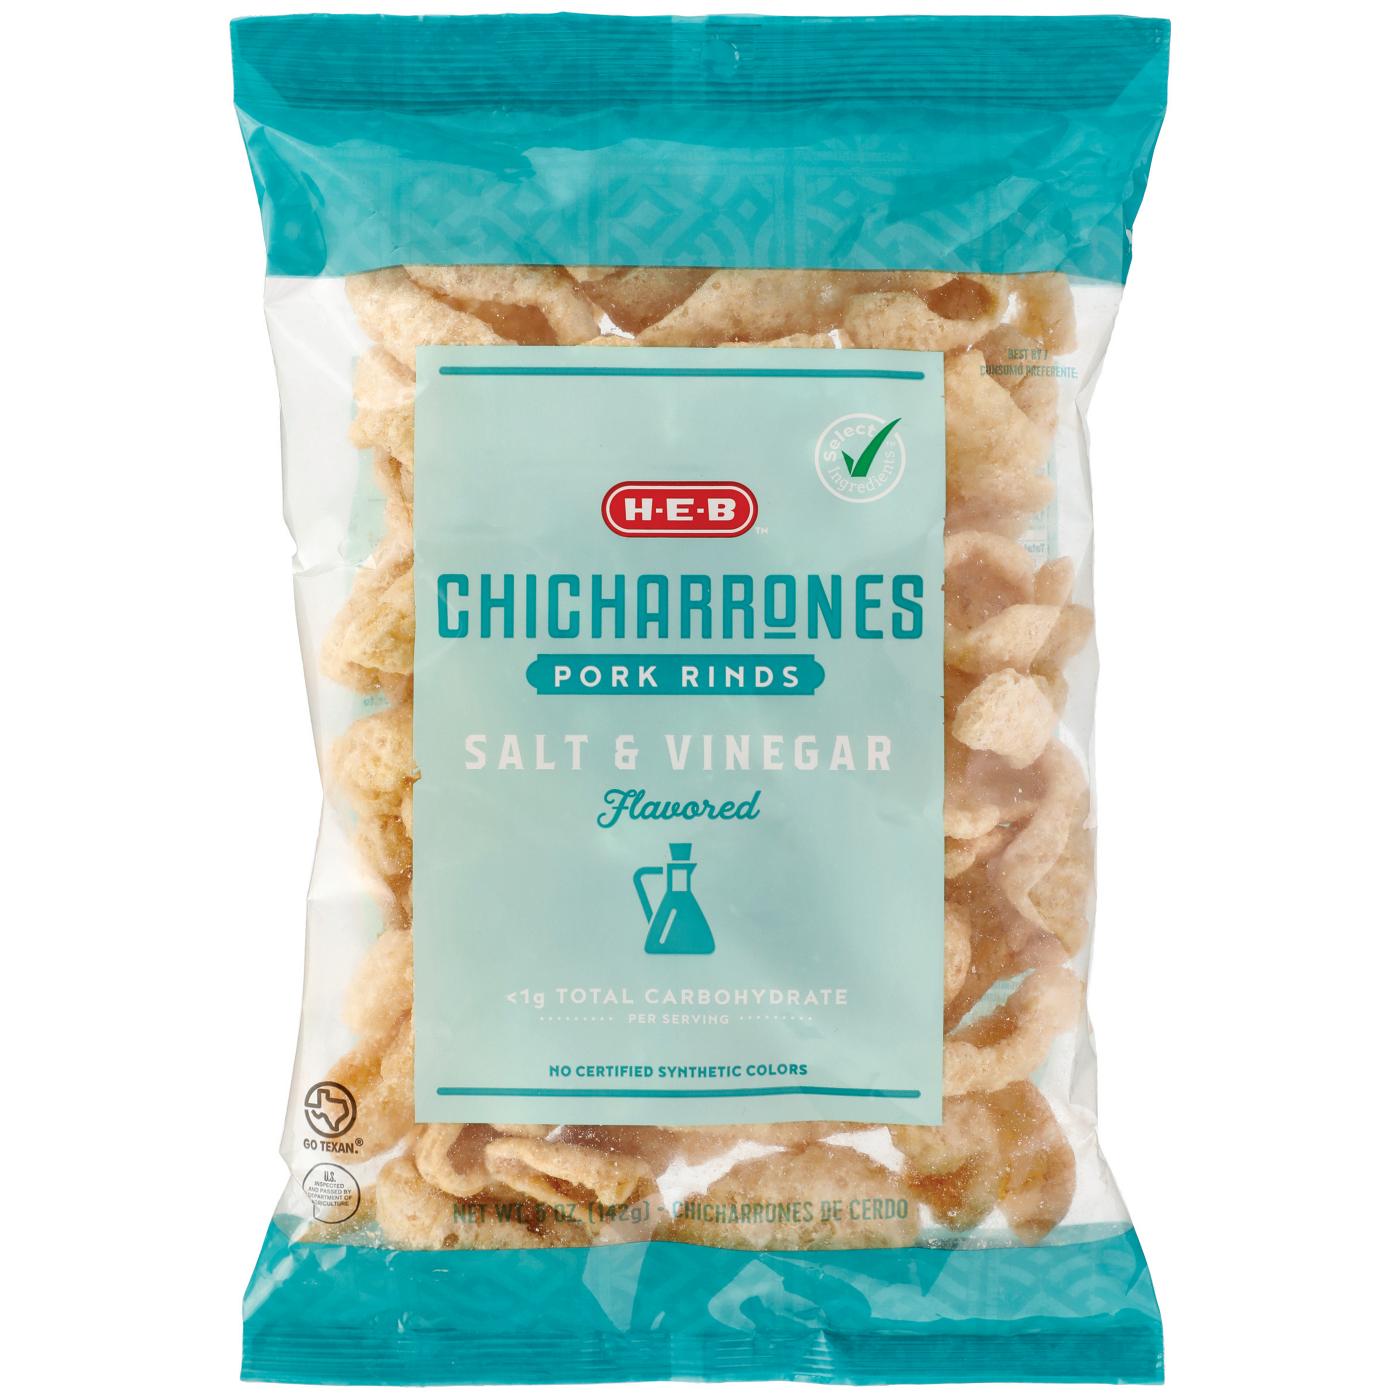 H-E-B Chicharrones Pork Rinds - Salt & Vinegar; image 1 of 2